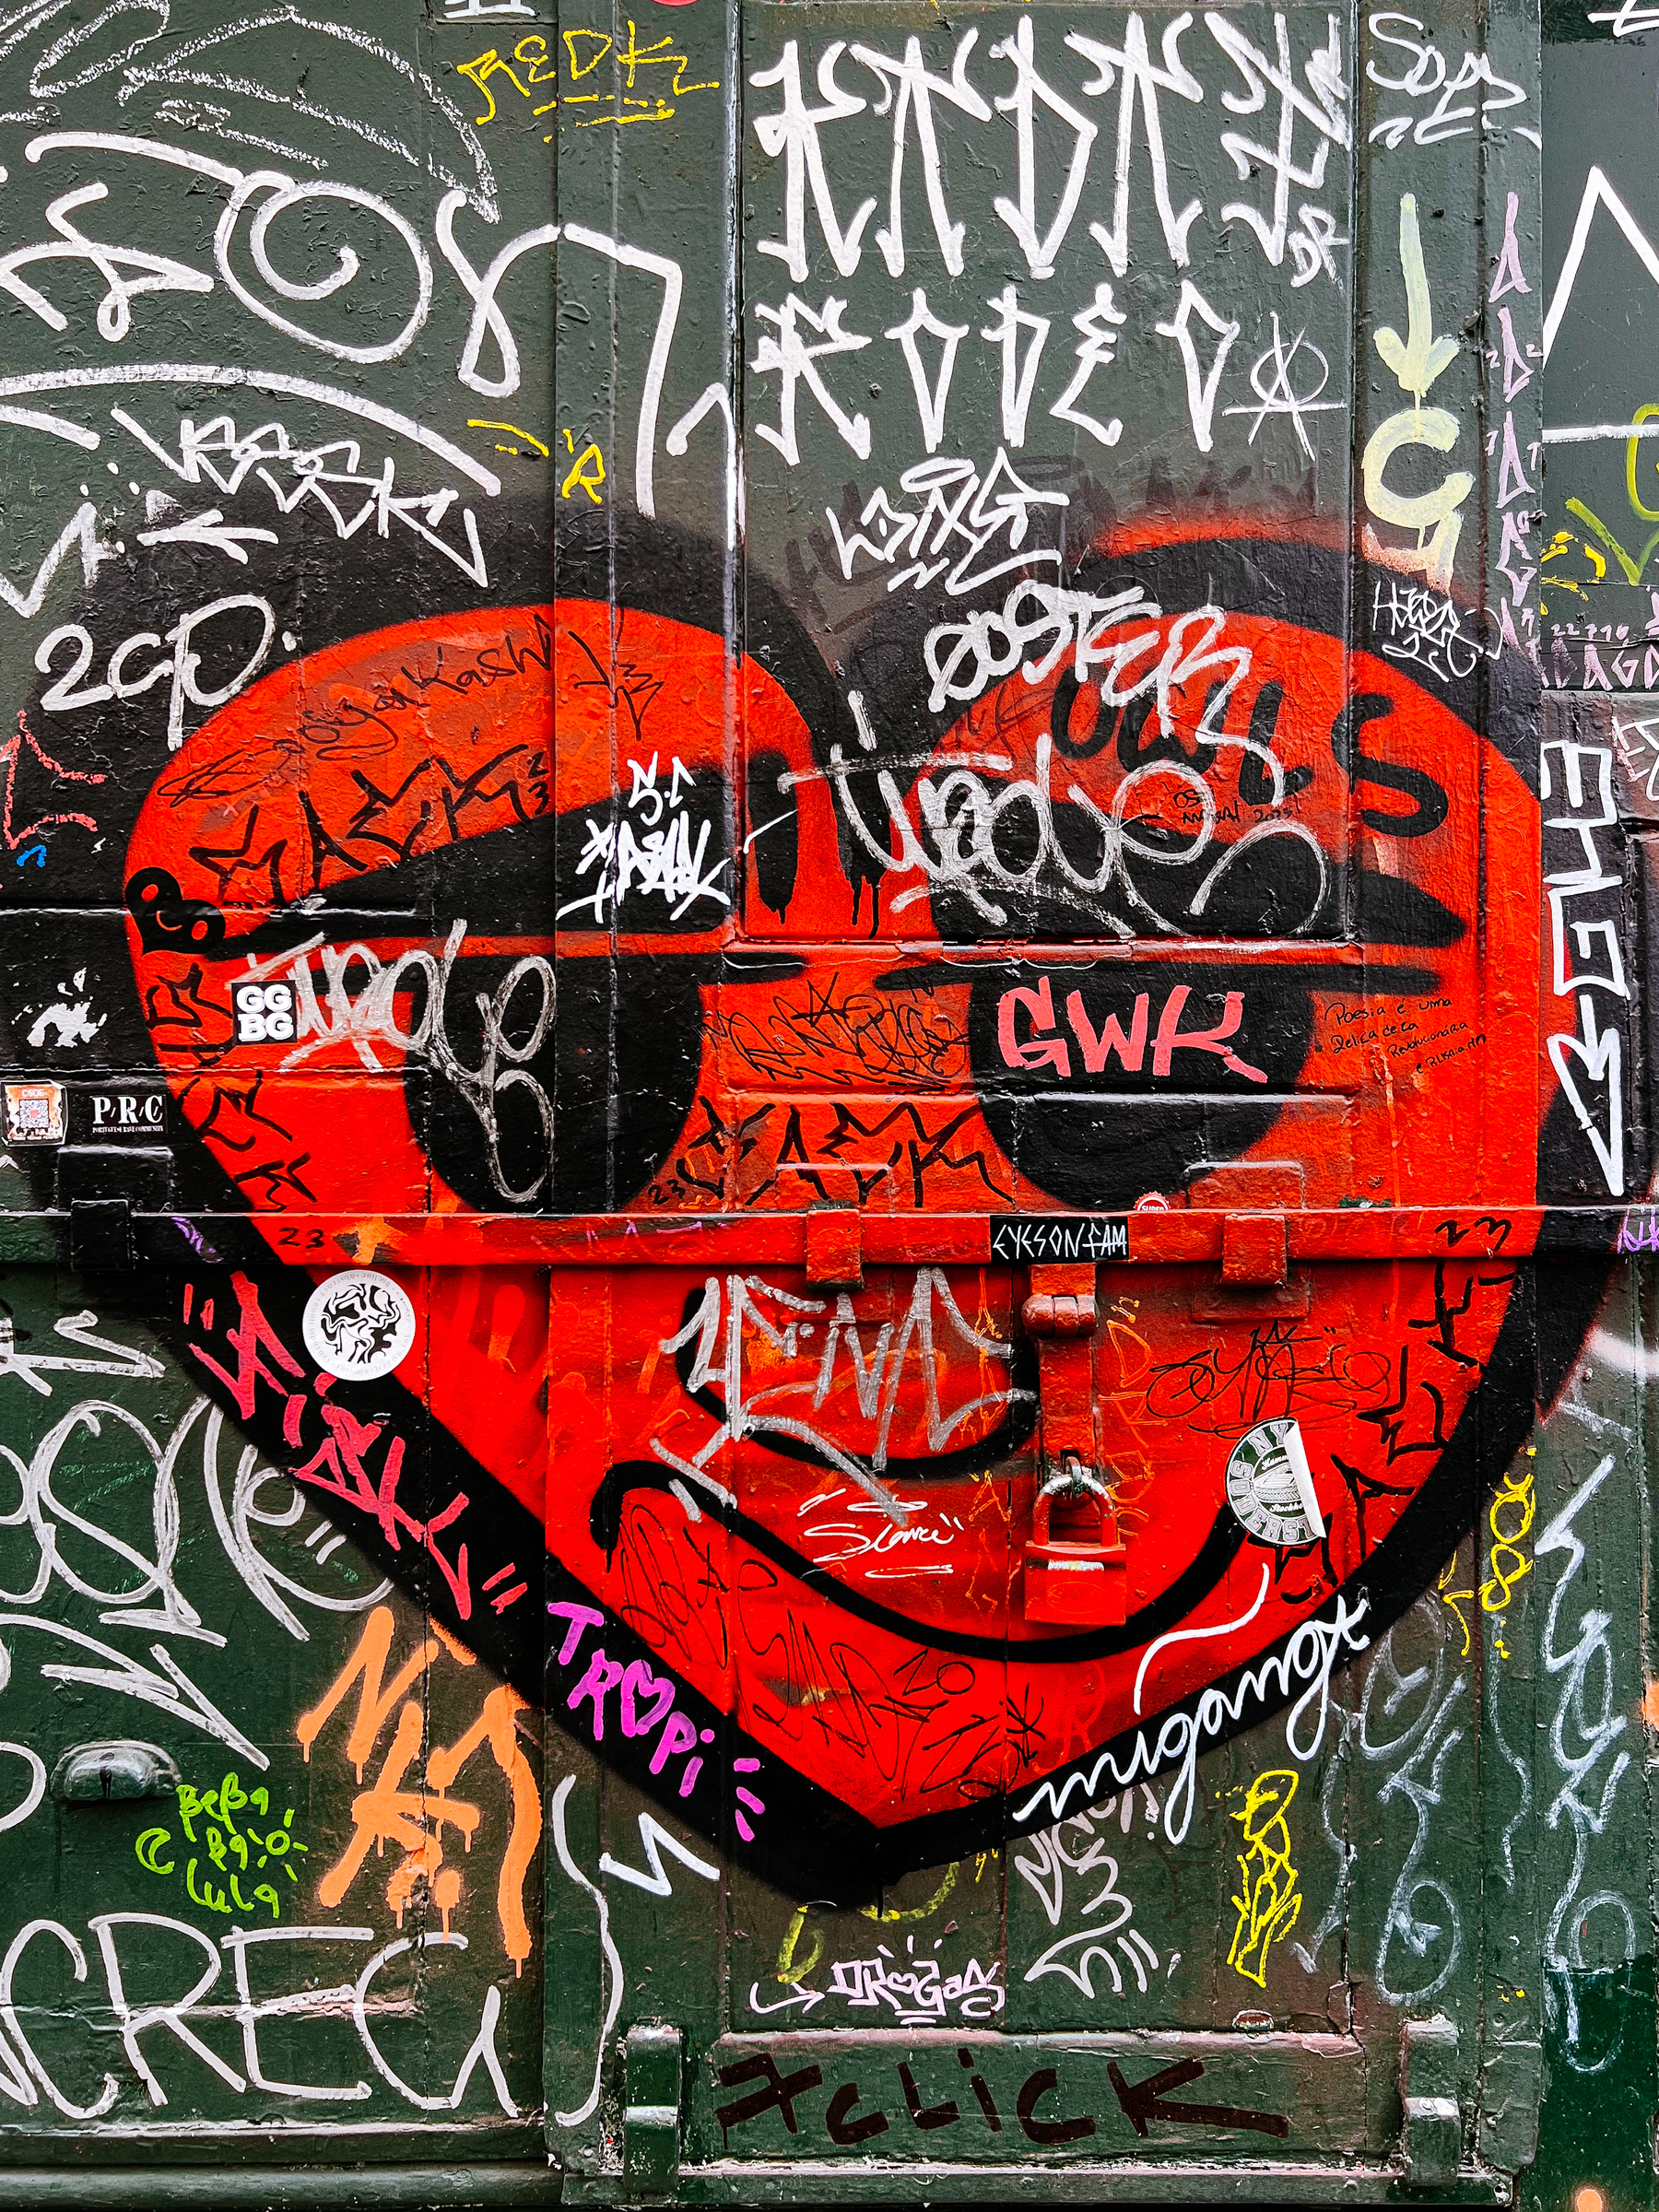 A graffitied heart.